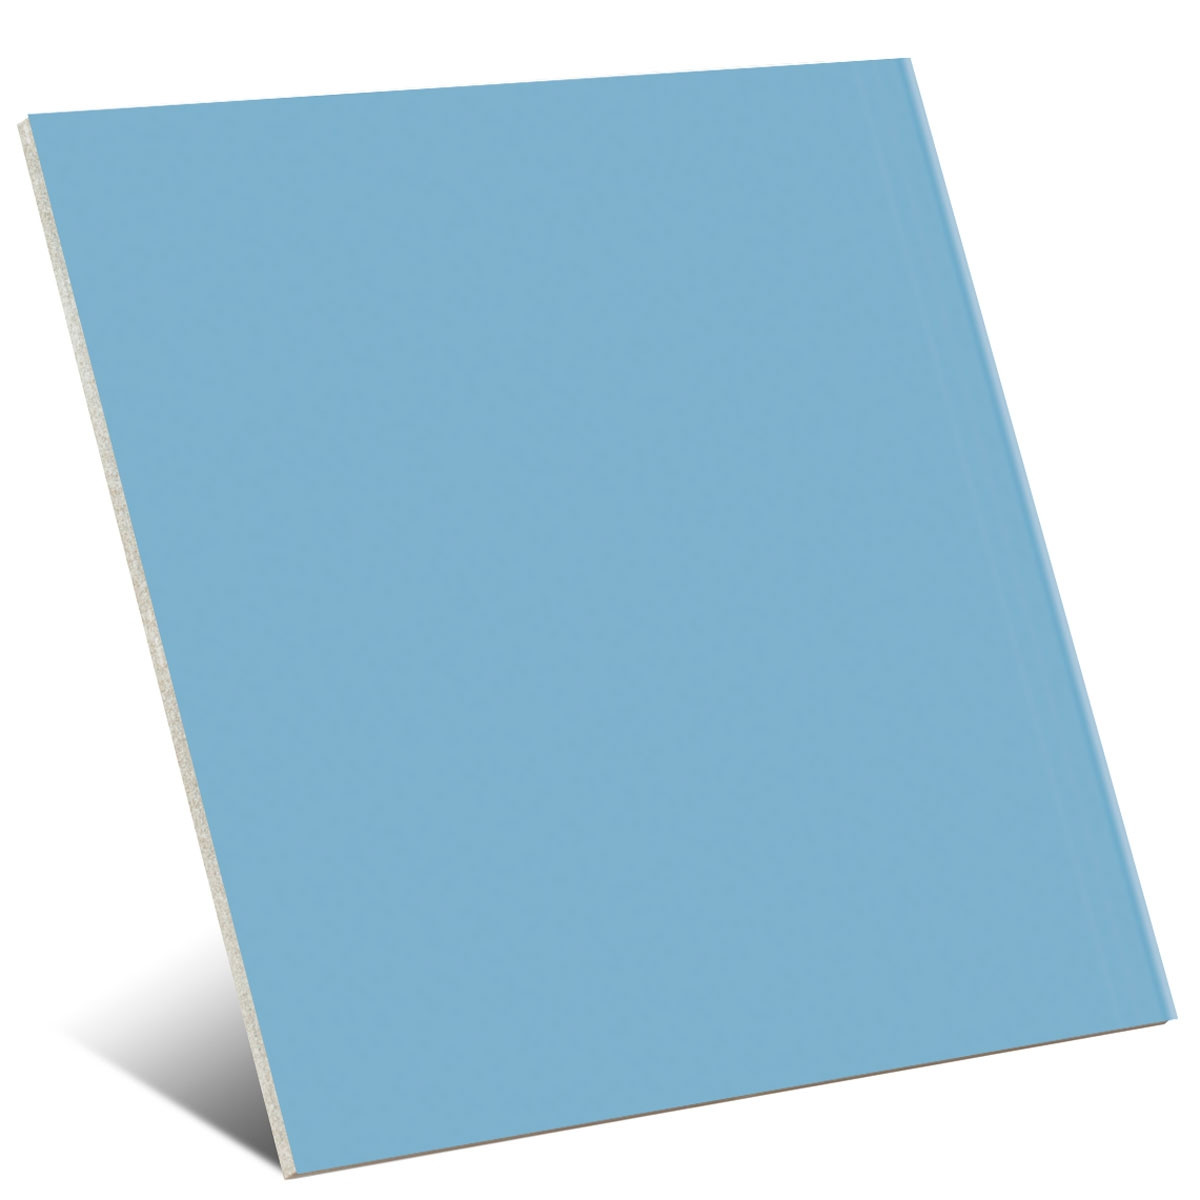 Carrelage uni bleu ciel 20x20 cm pour damier MONOCOLOR AZUL CELESTE - 1m² - 2